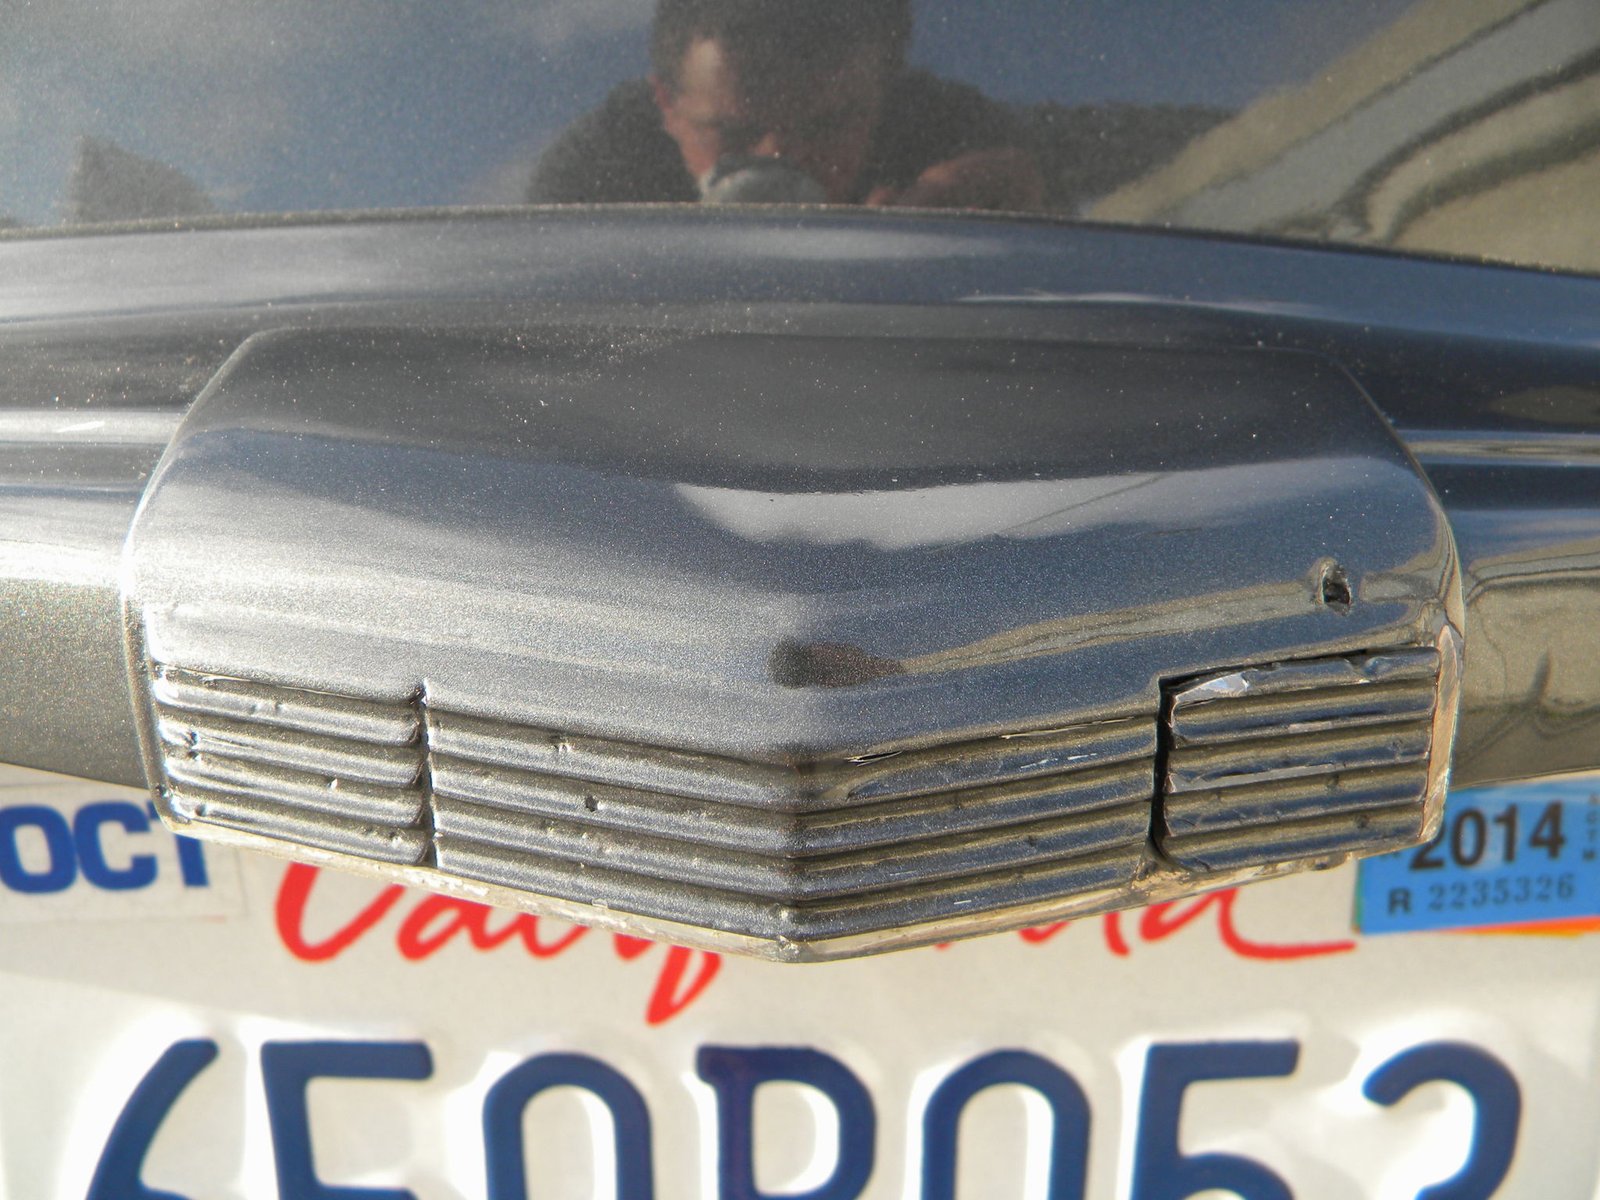 1950 Ford Shoebox 2 Door